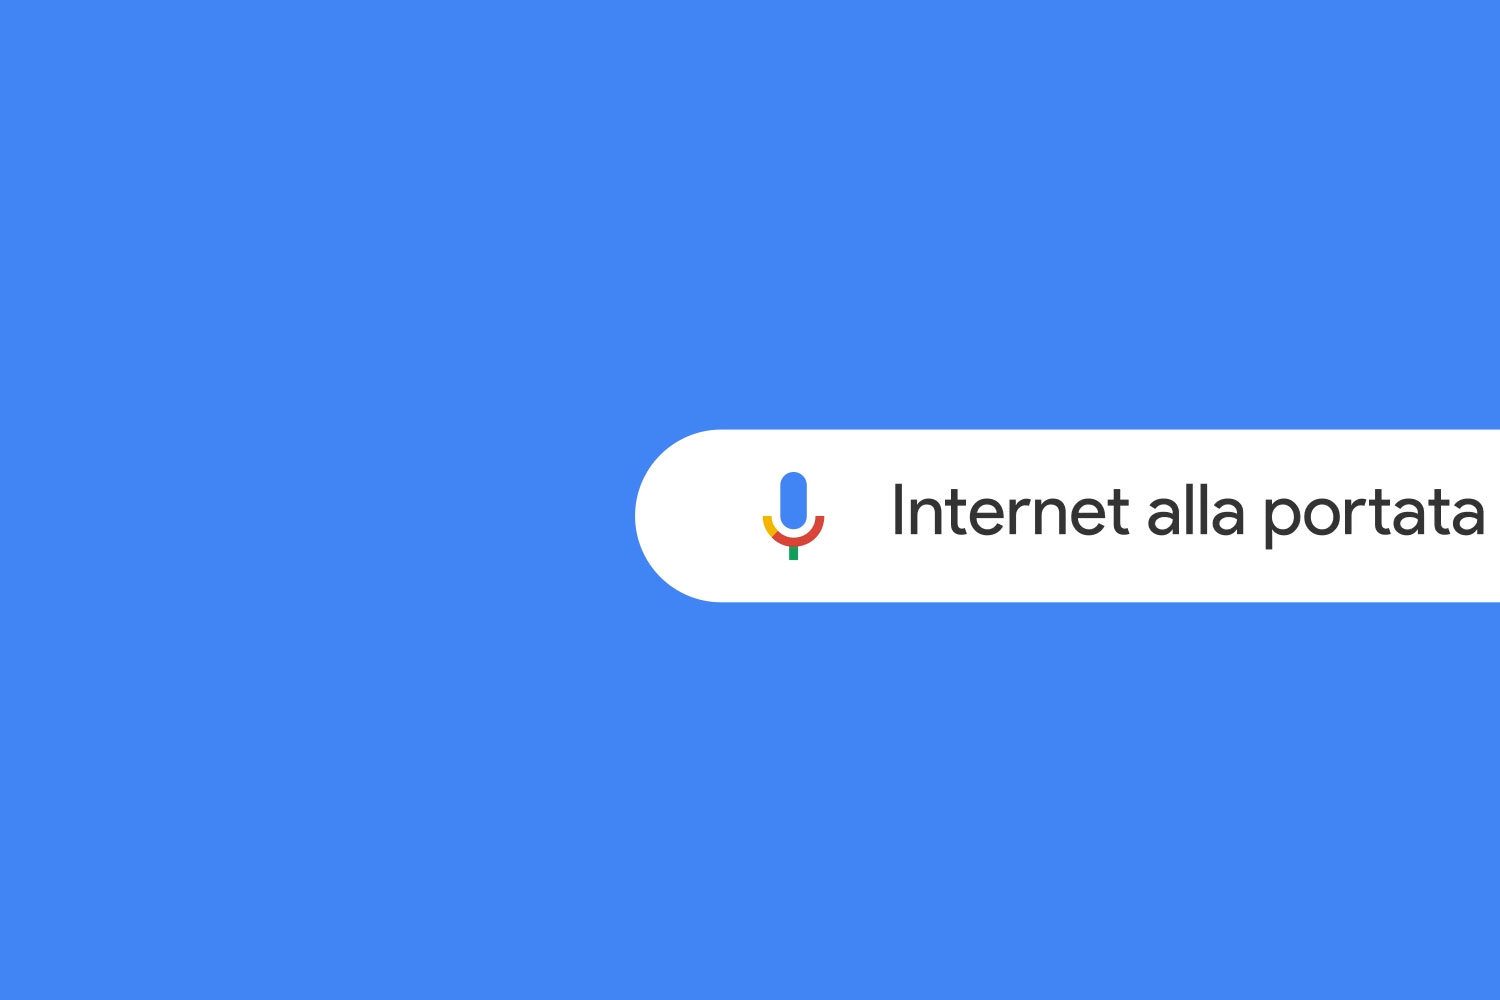 Google in Italy